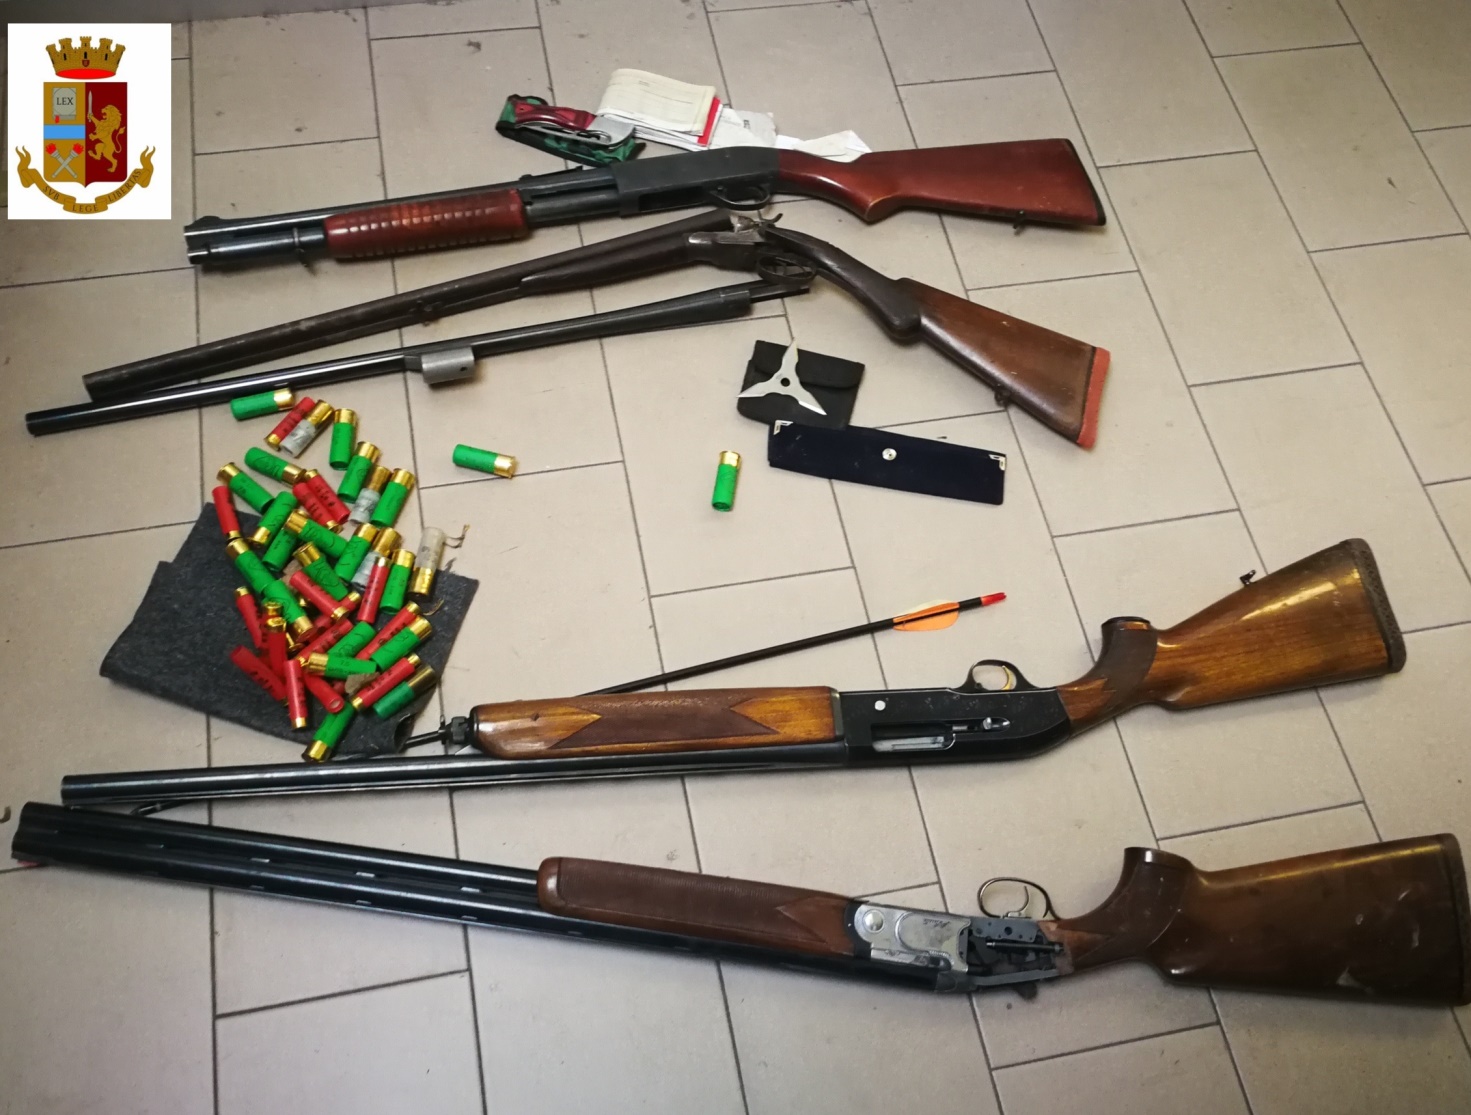 Armato di fucili, coltelli e mannaia in zona parco, denunciato un imprenditore